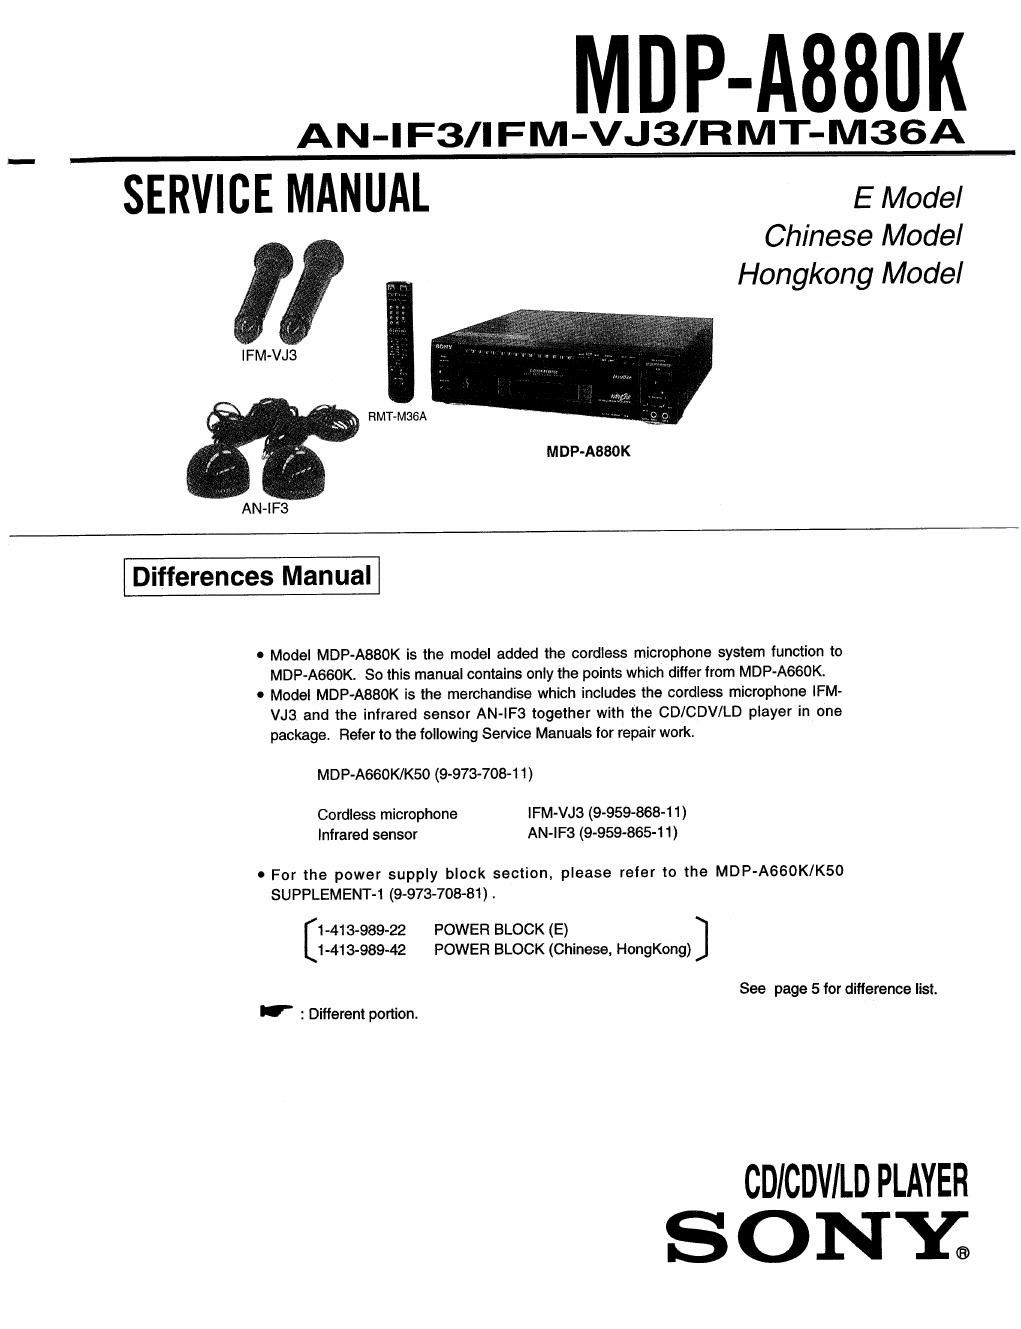 sony mdp a 880 k service manual